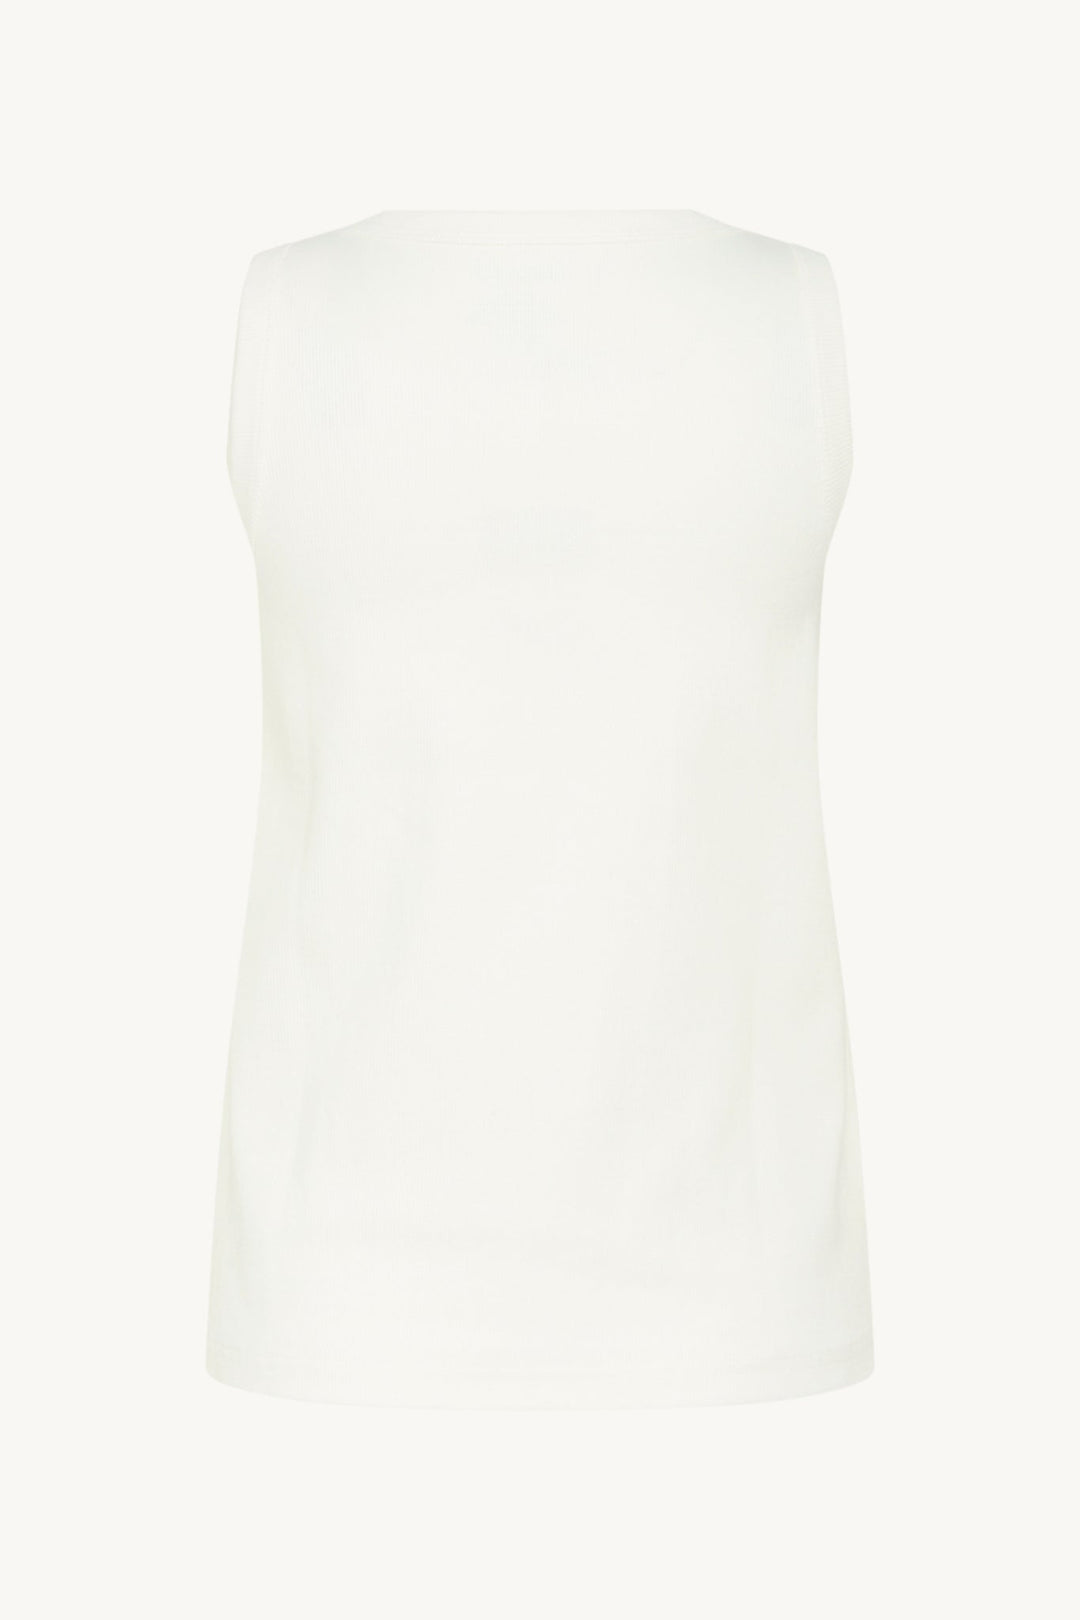 Avery-Cw T-Shirt Ivory | Skjorter og bluser | Smuk - Dameklær på nett